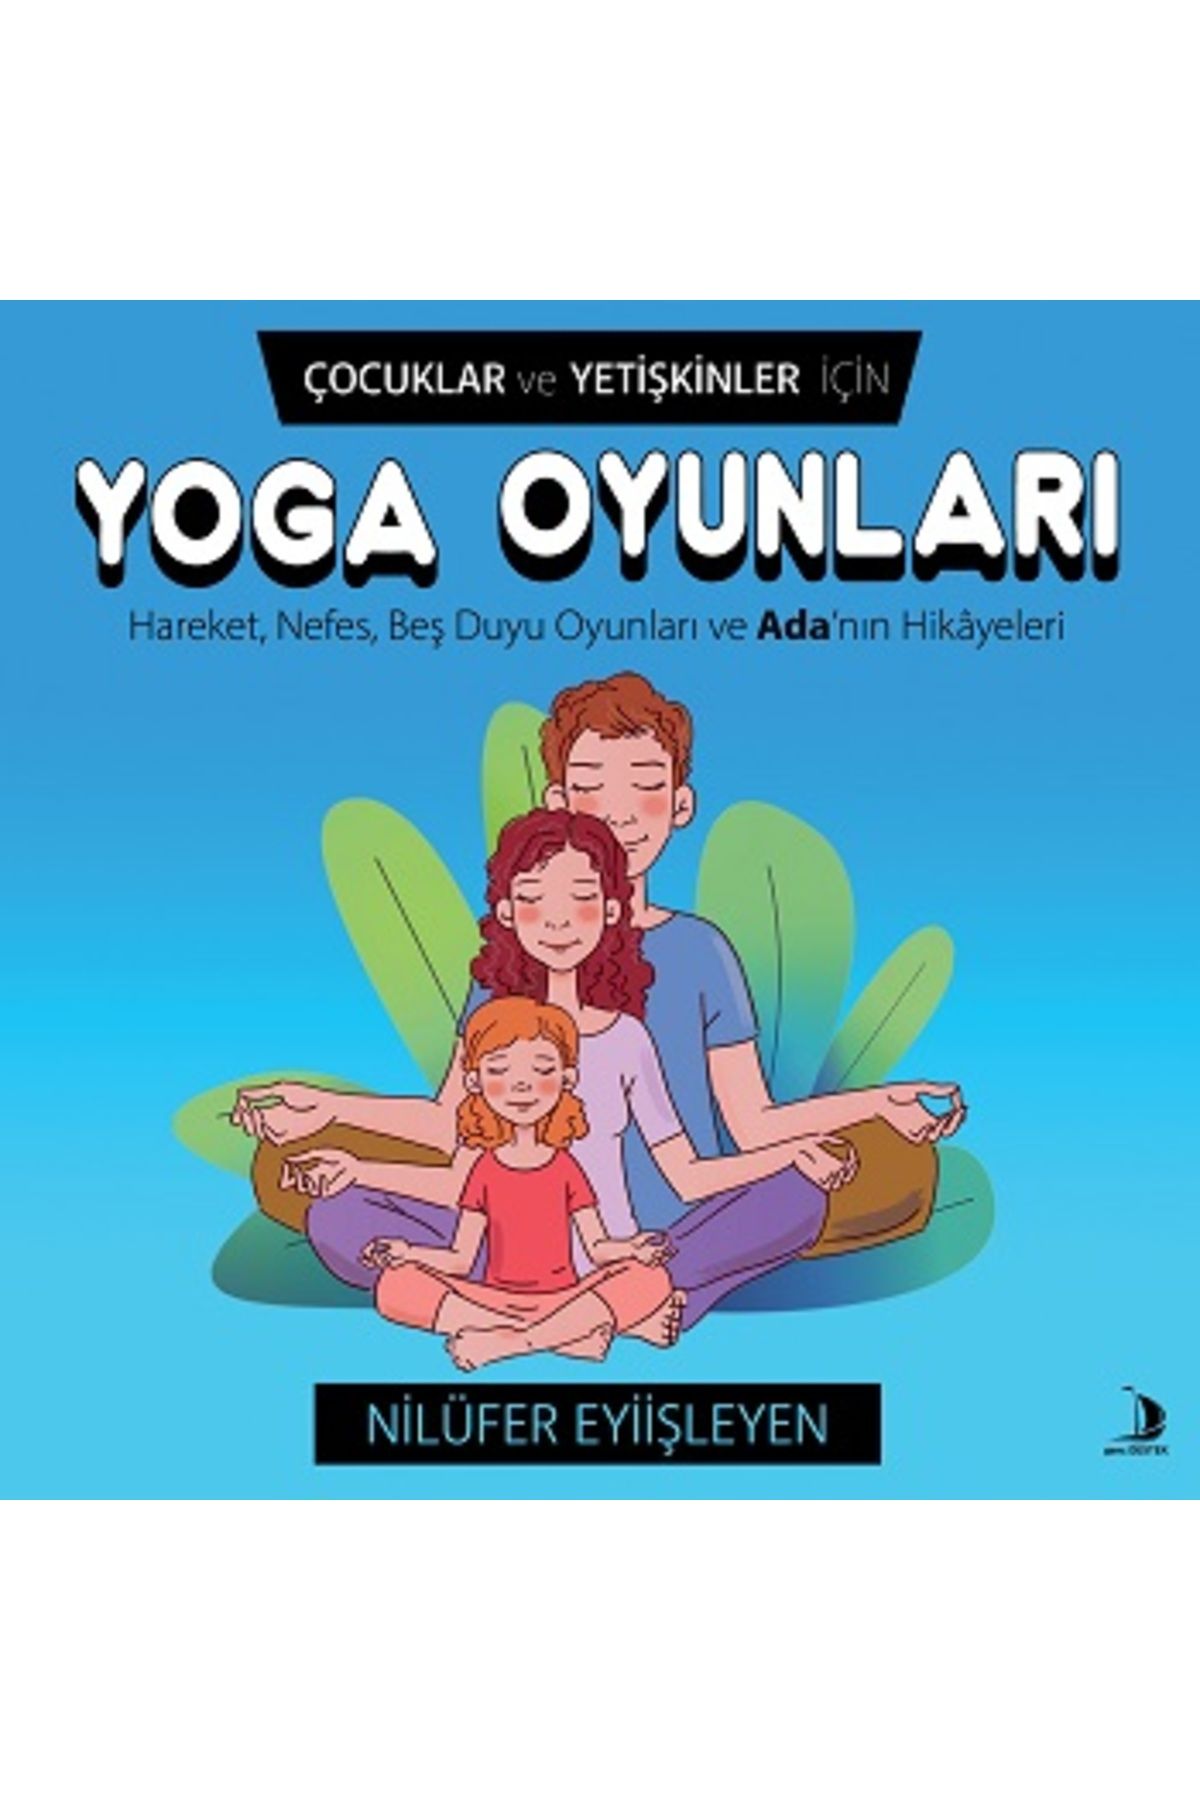 Destek Yayınları Çocuklar ve Yetişkinler İçin Yoga Oyunları kitabı - Nilüfer Eyiişleyen - Destek Yayınları